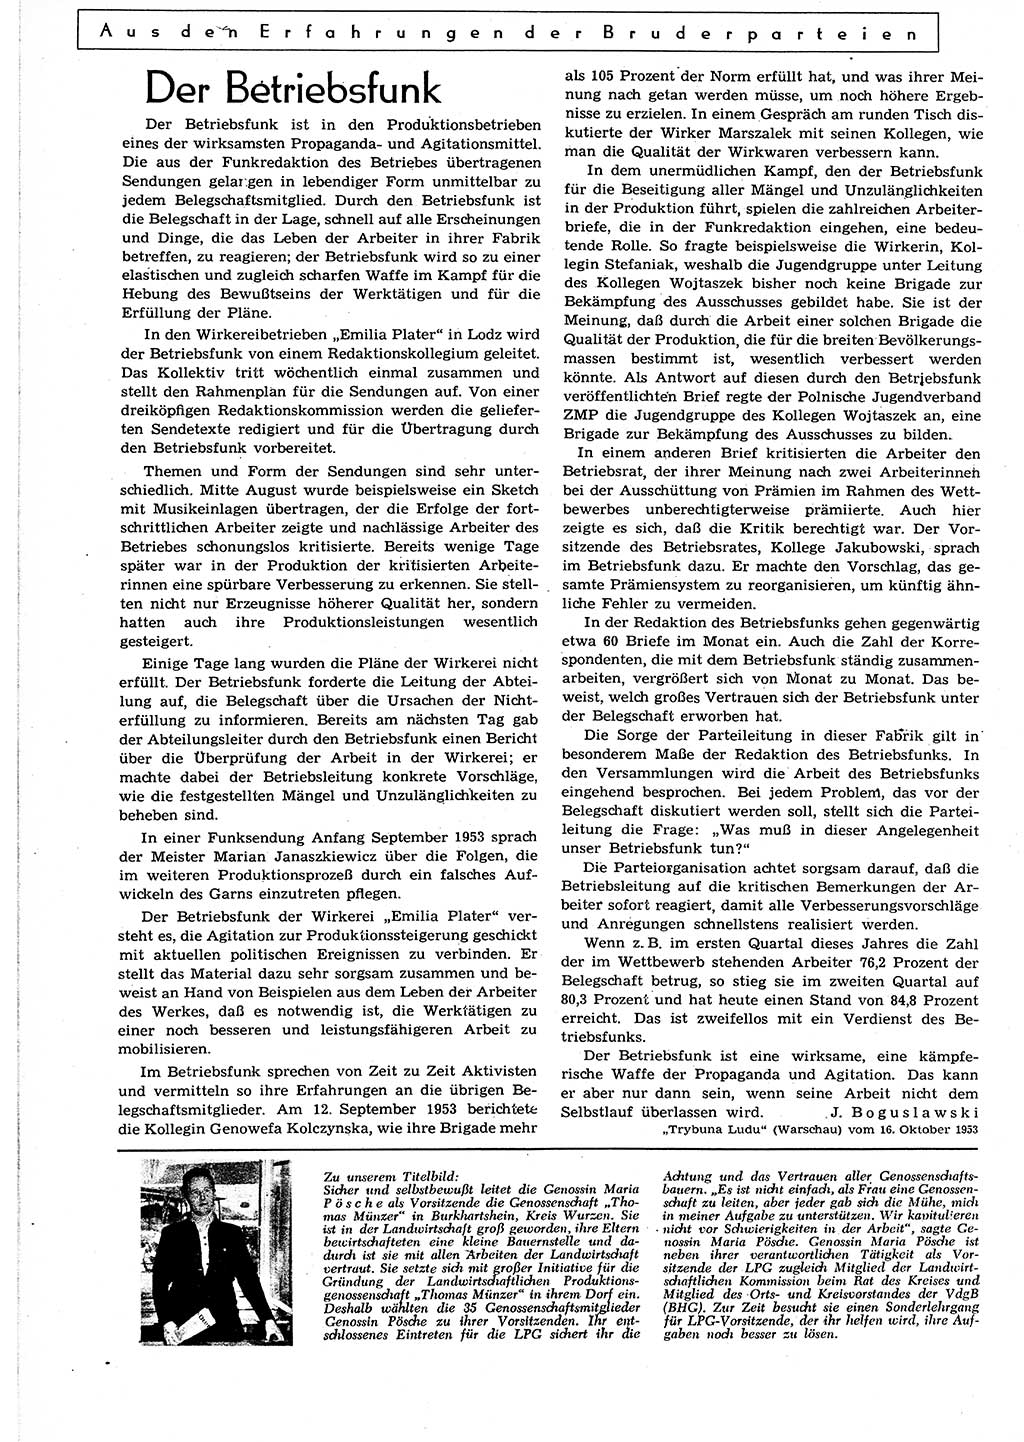 Neuer Weg (NW), Organ des Zentralkomitees (ZK) der SED (Sozialistische Einheitspartei Deutschlands) für alle Parteiarbeiter, 9. Jahrgang [Deutsche Demokratische Republik (DDR)] 1954, Heft 4/42 (NW ZK SED DDR 1954, H. 4/42)